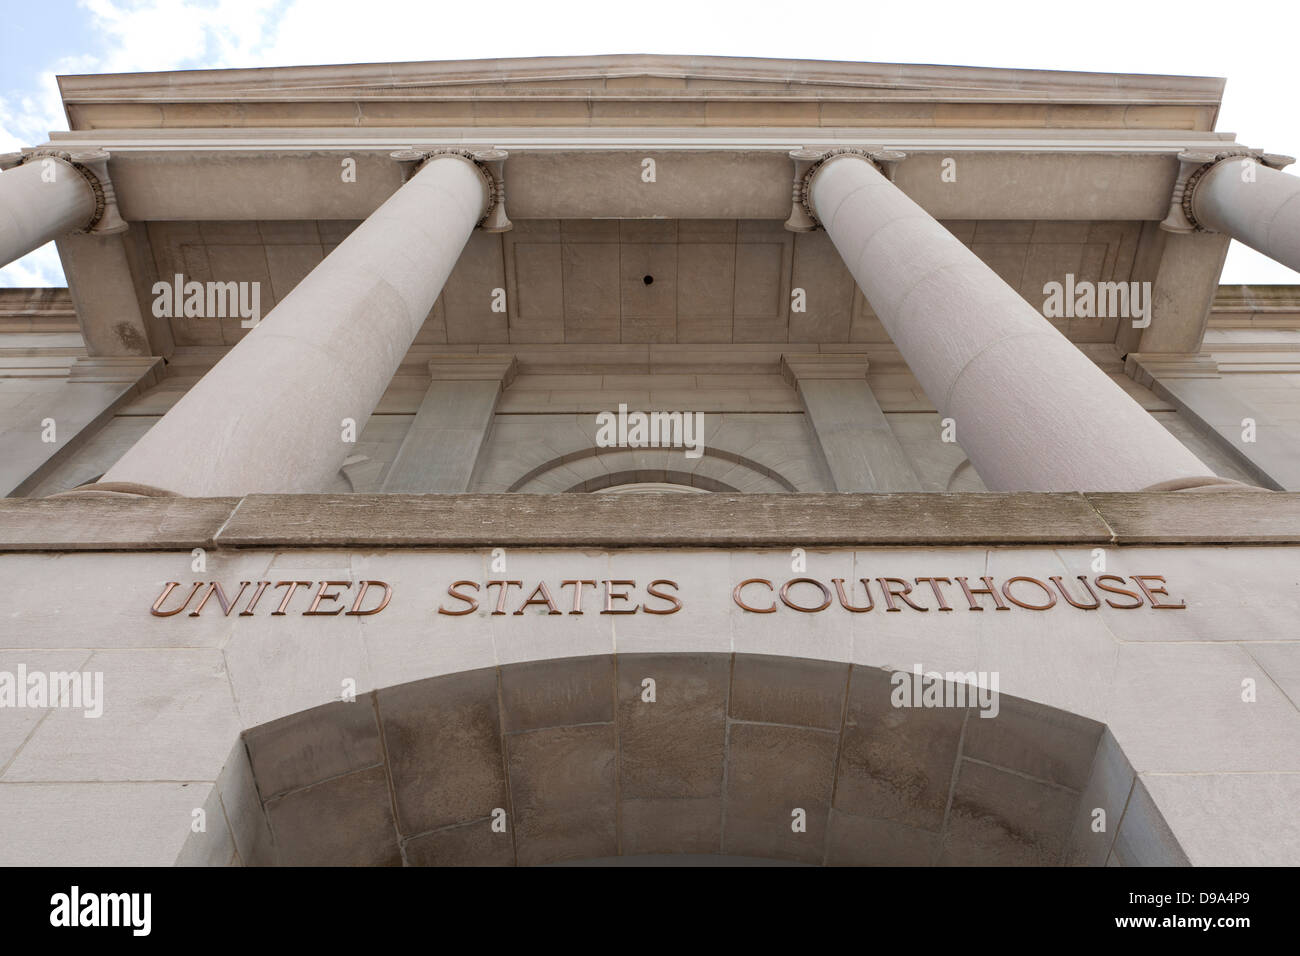 US Courthouse building - Washington, DC USA Stock Photo